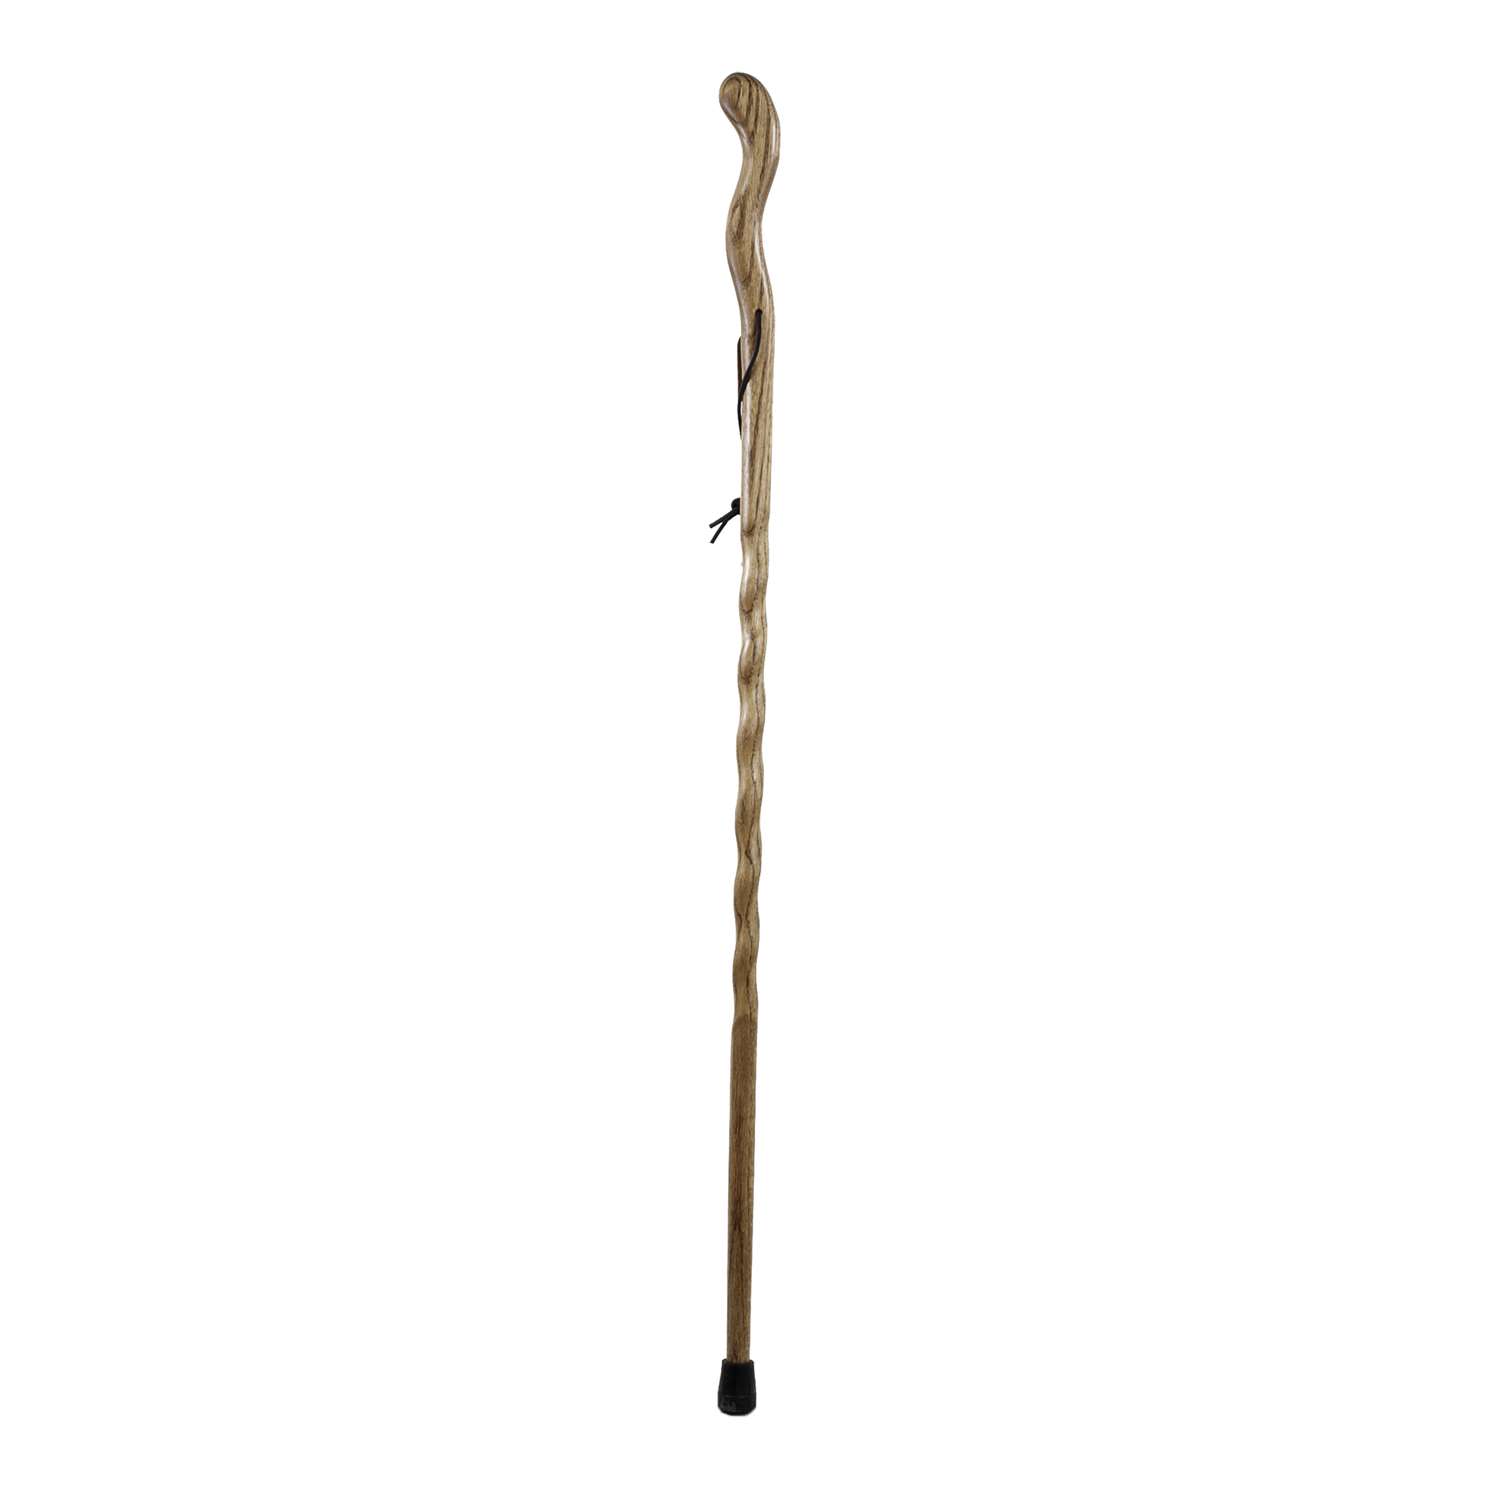 Brazos Walking Sticks Wood Cane Ace Hardware 5614